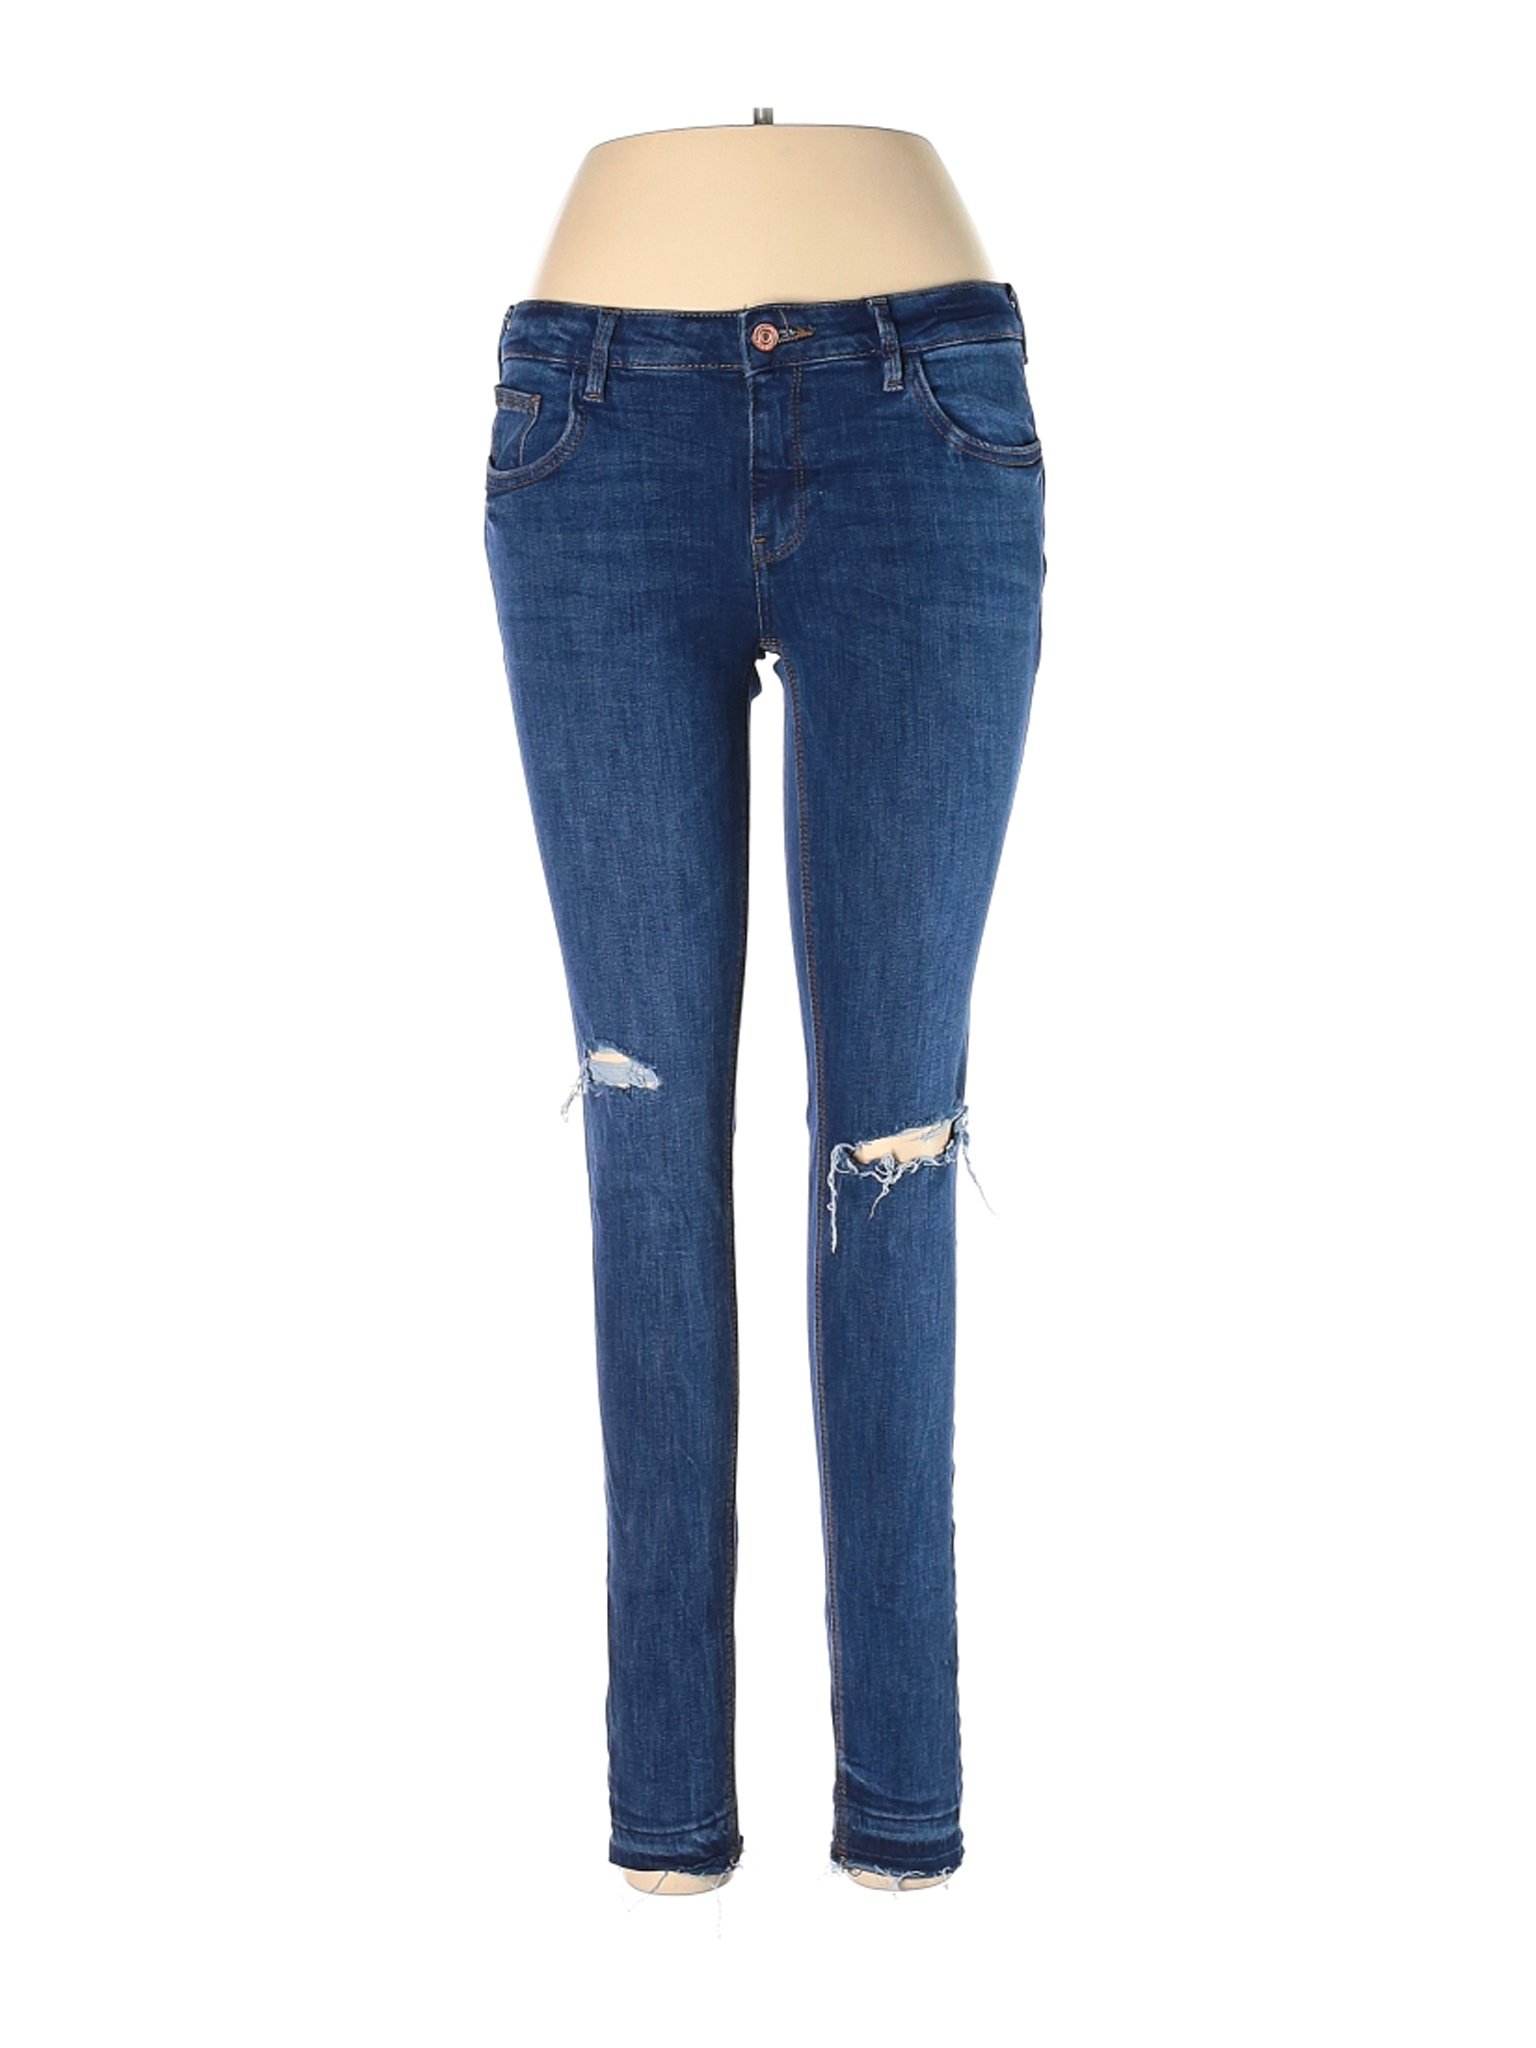 MNG Women Blue Jeans 6 | eBay